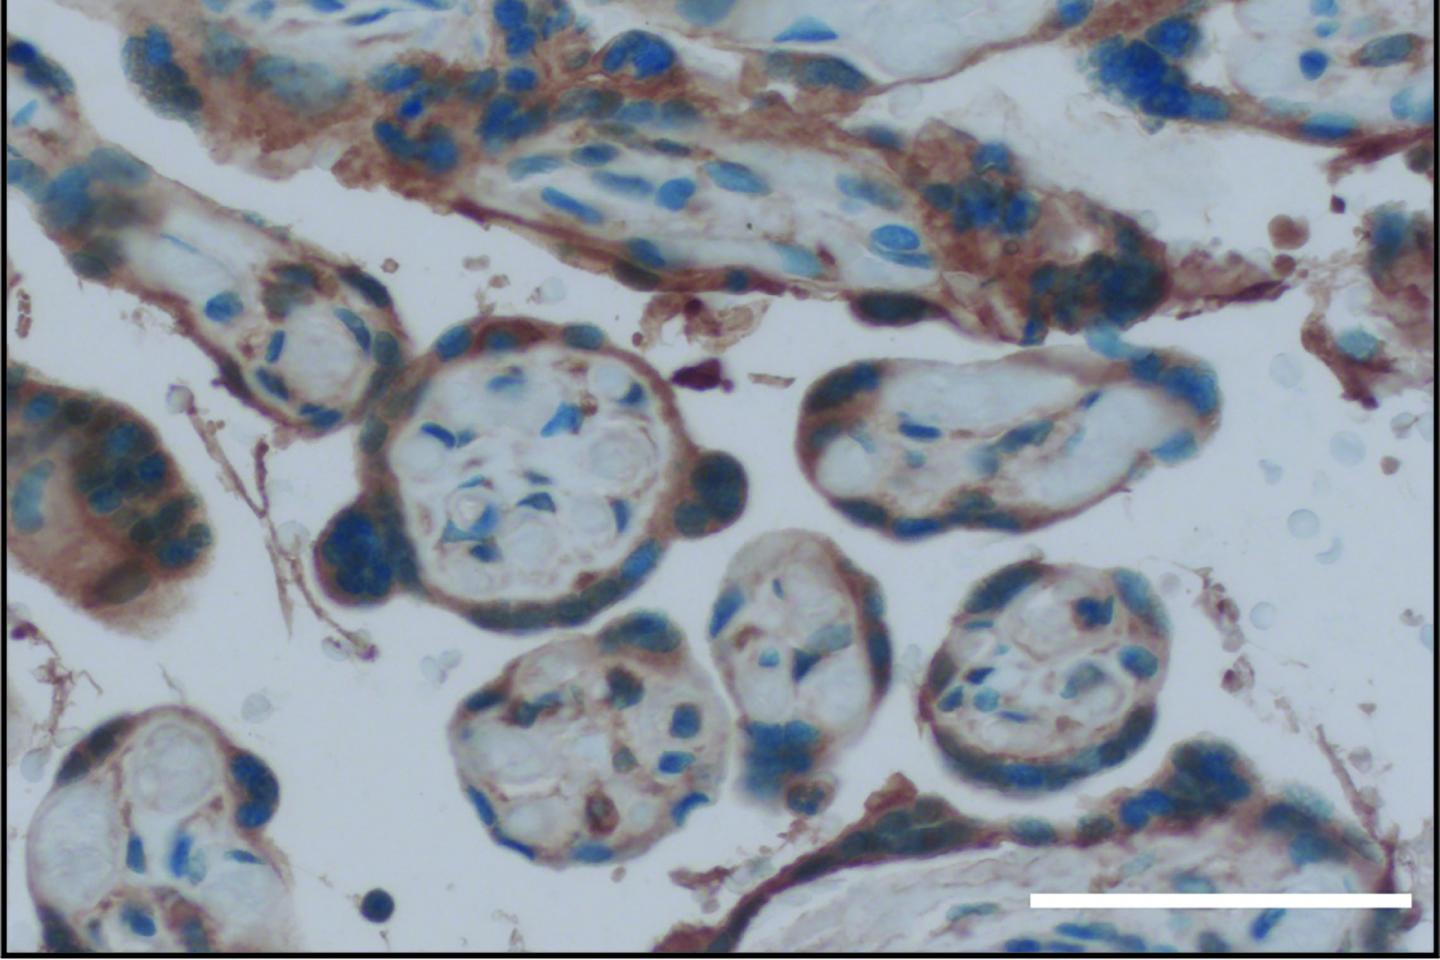 GPER1 in Placental Cells